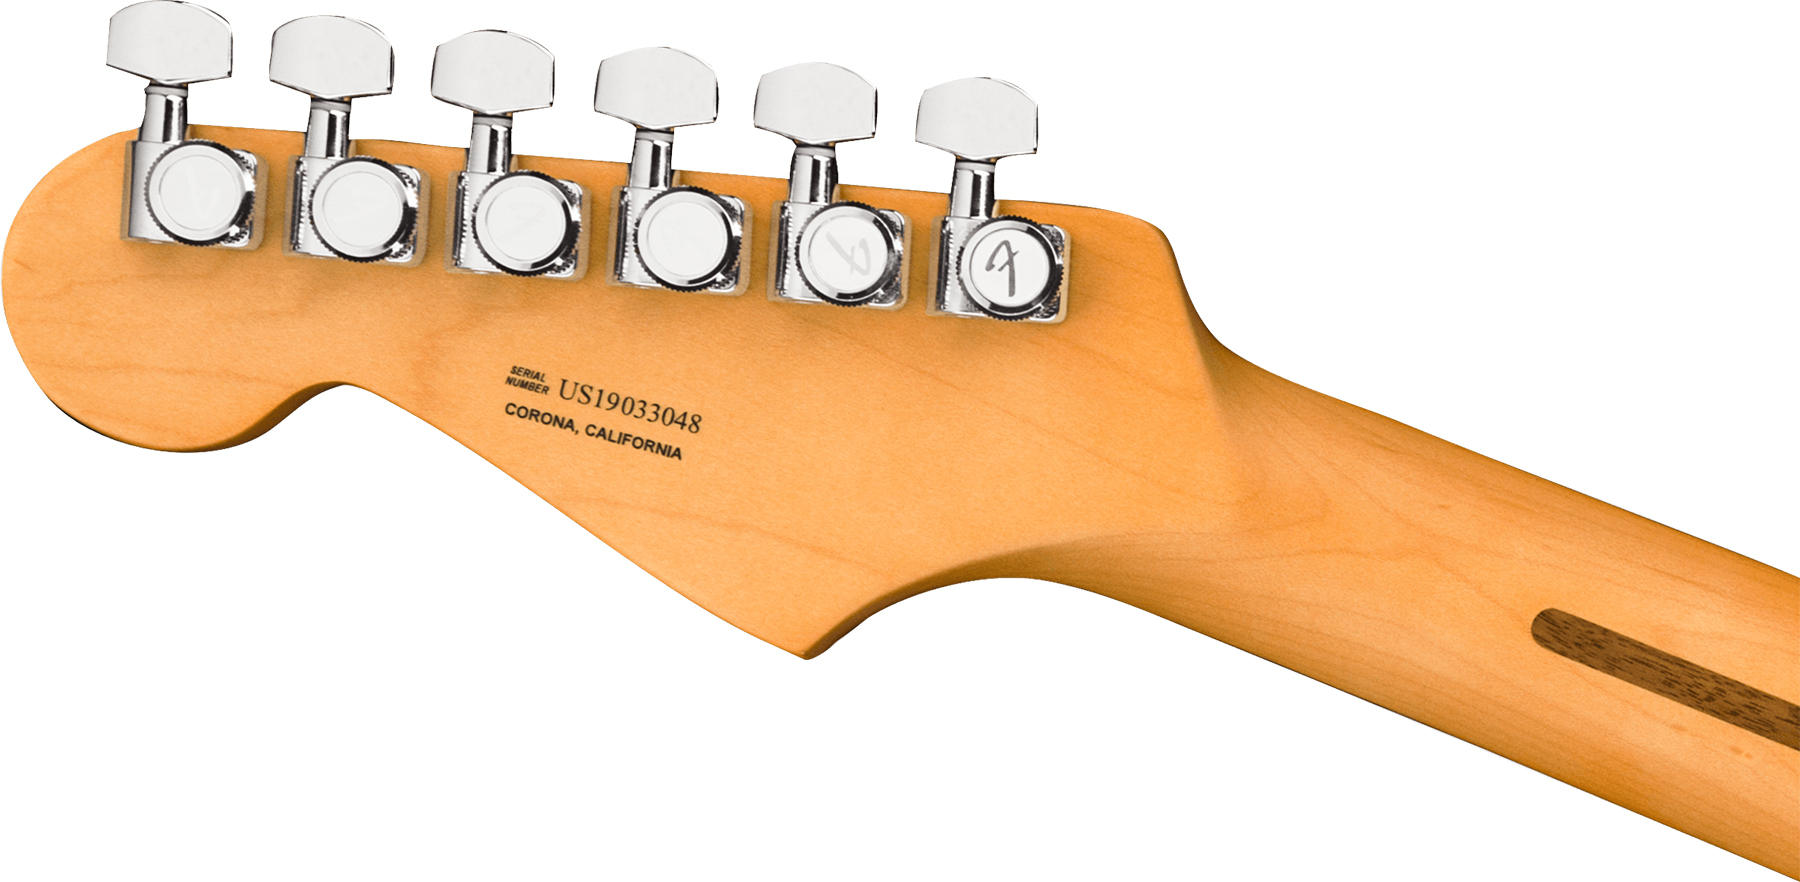 Fender Strat American Ultra Hss 2019 Usa Mn - Texas Tea - E-Gitarre in Str-Form - Variation 3